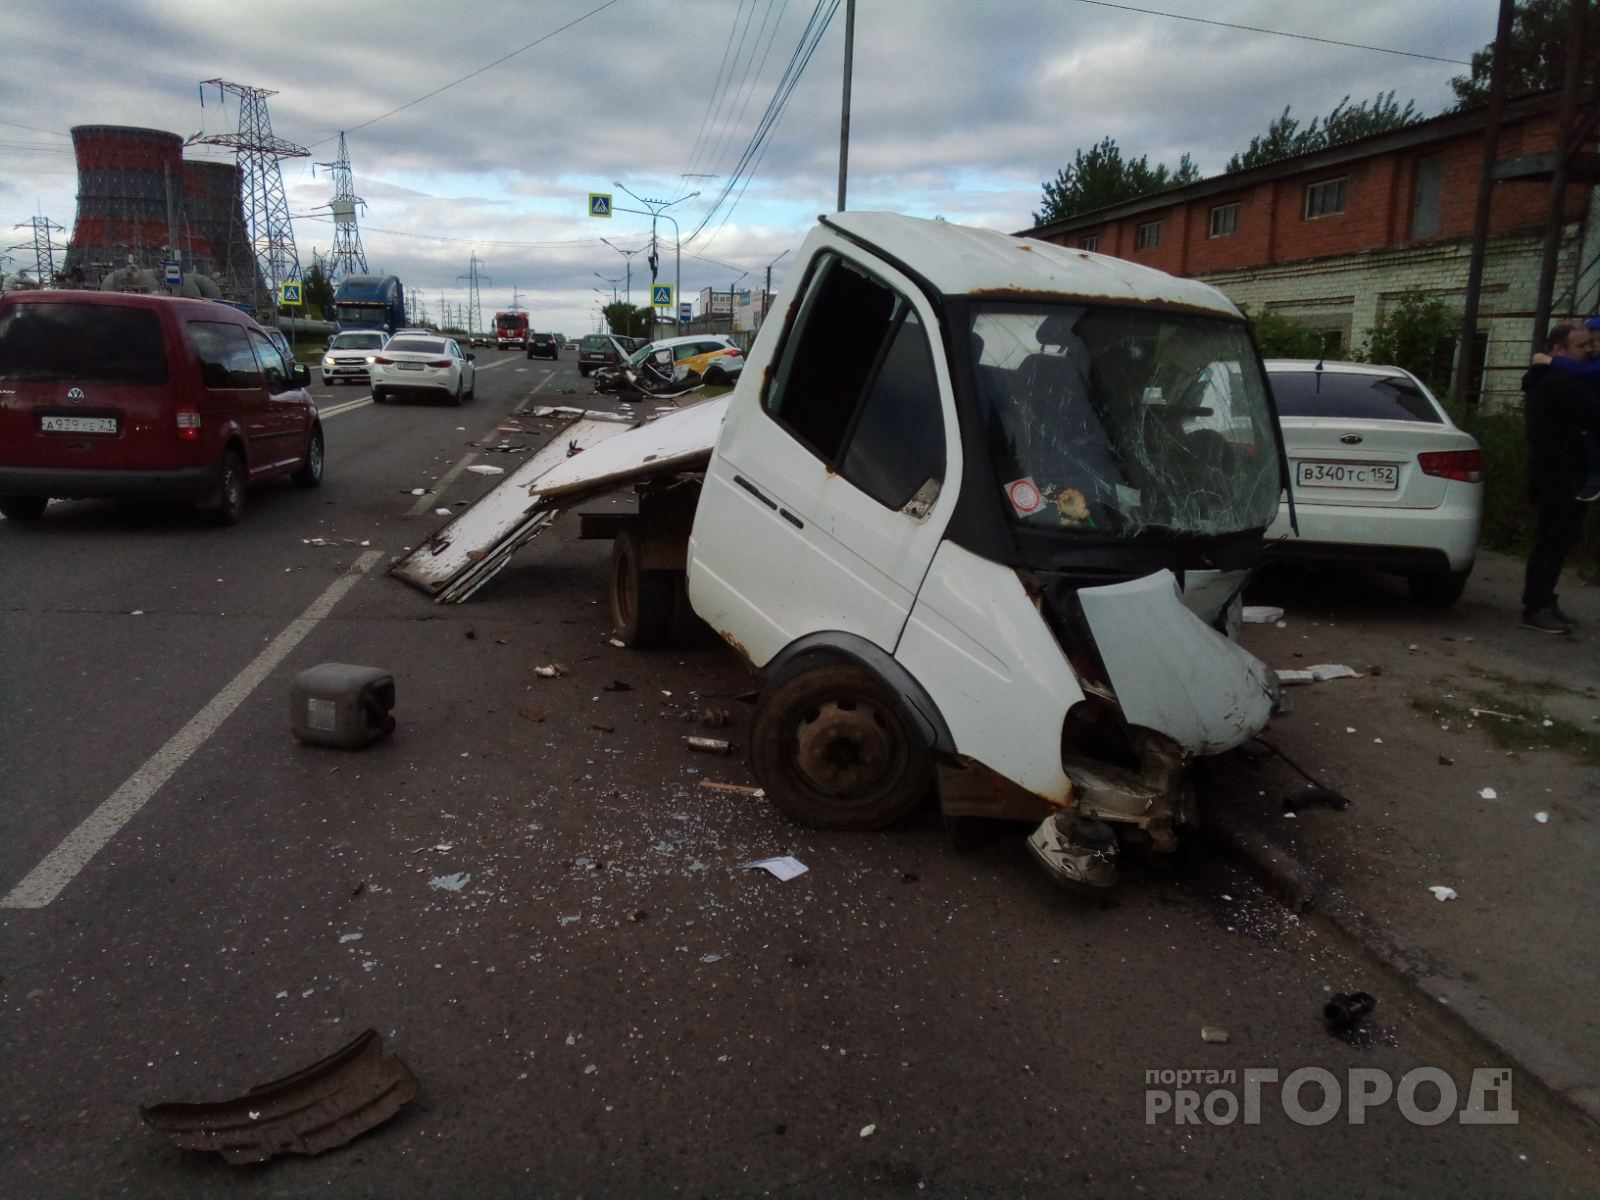 В Чебоксарах грузовая ГАЗель протаранила две иномарки: пострадали 4 человека